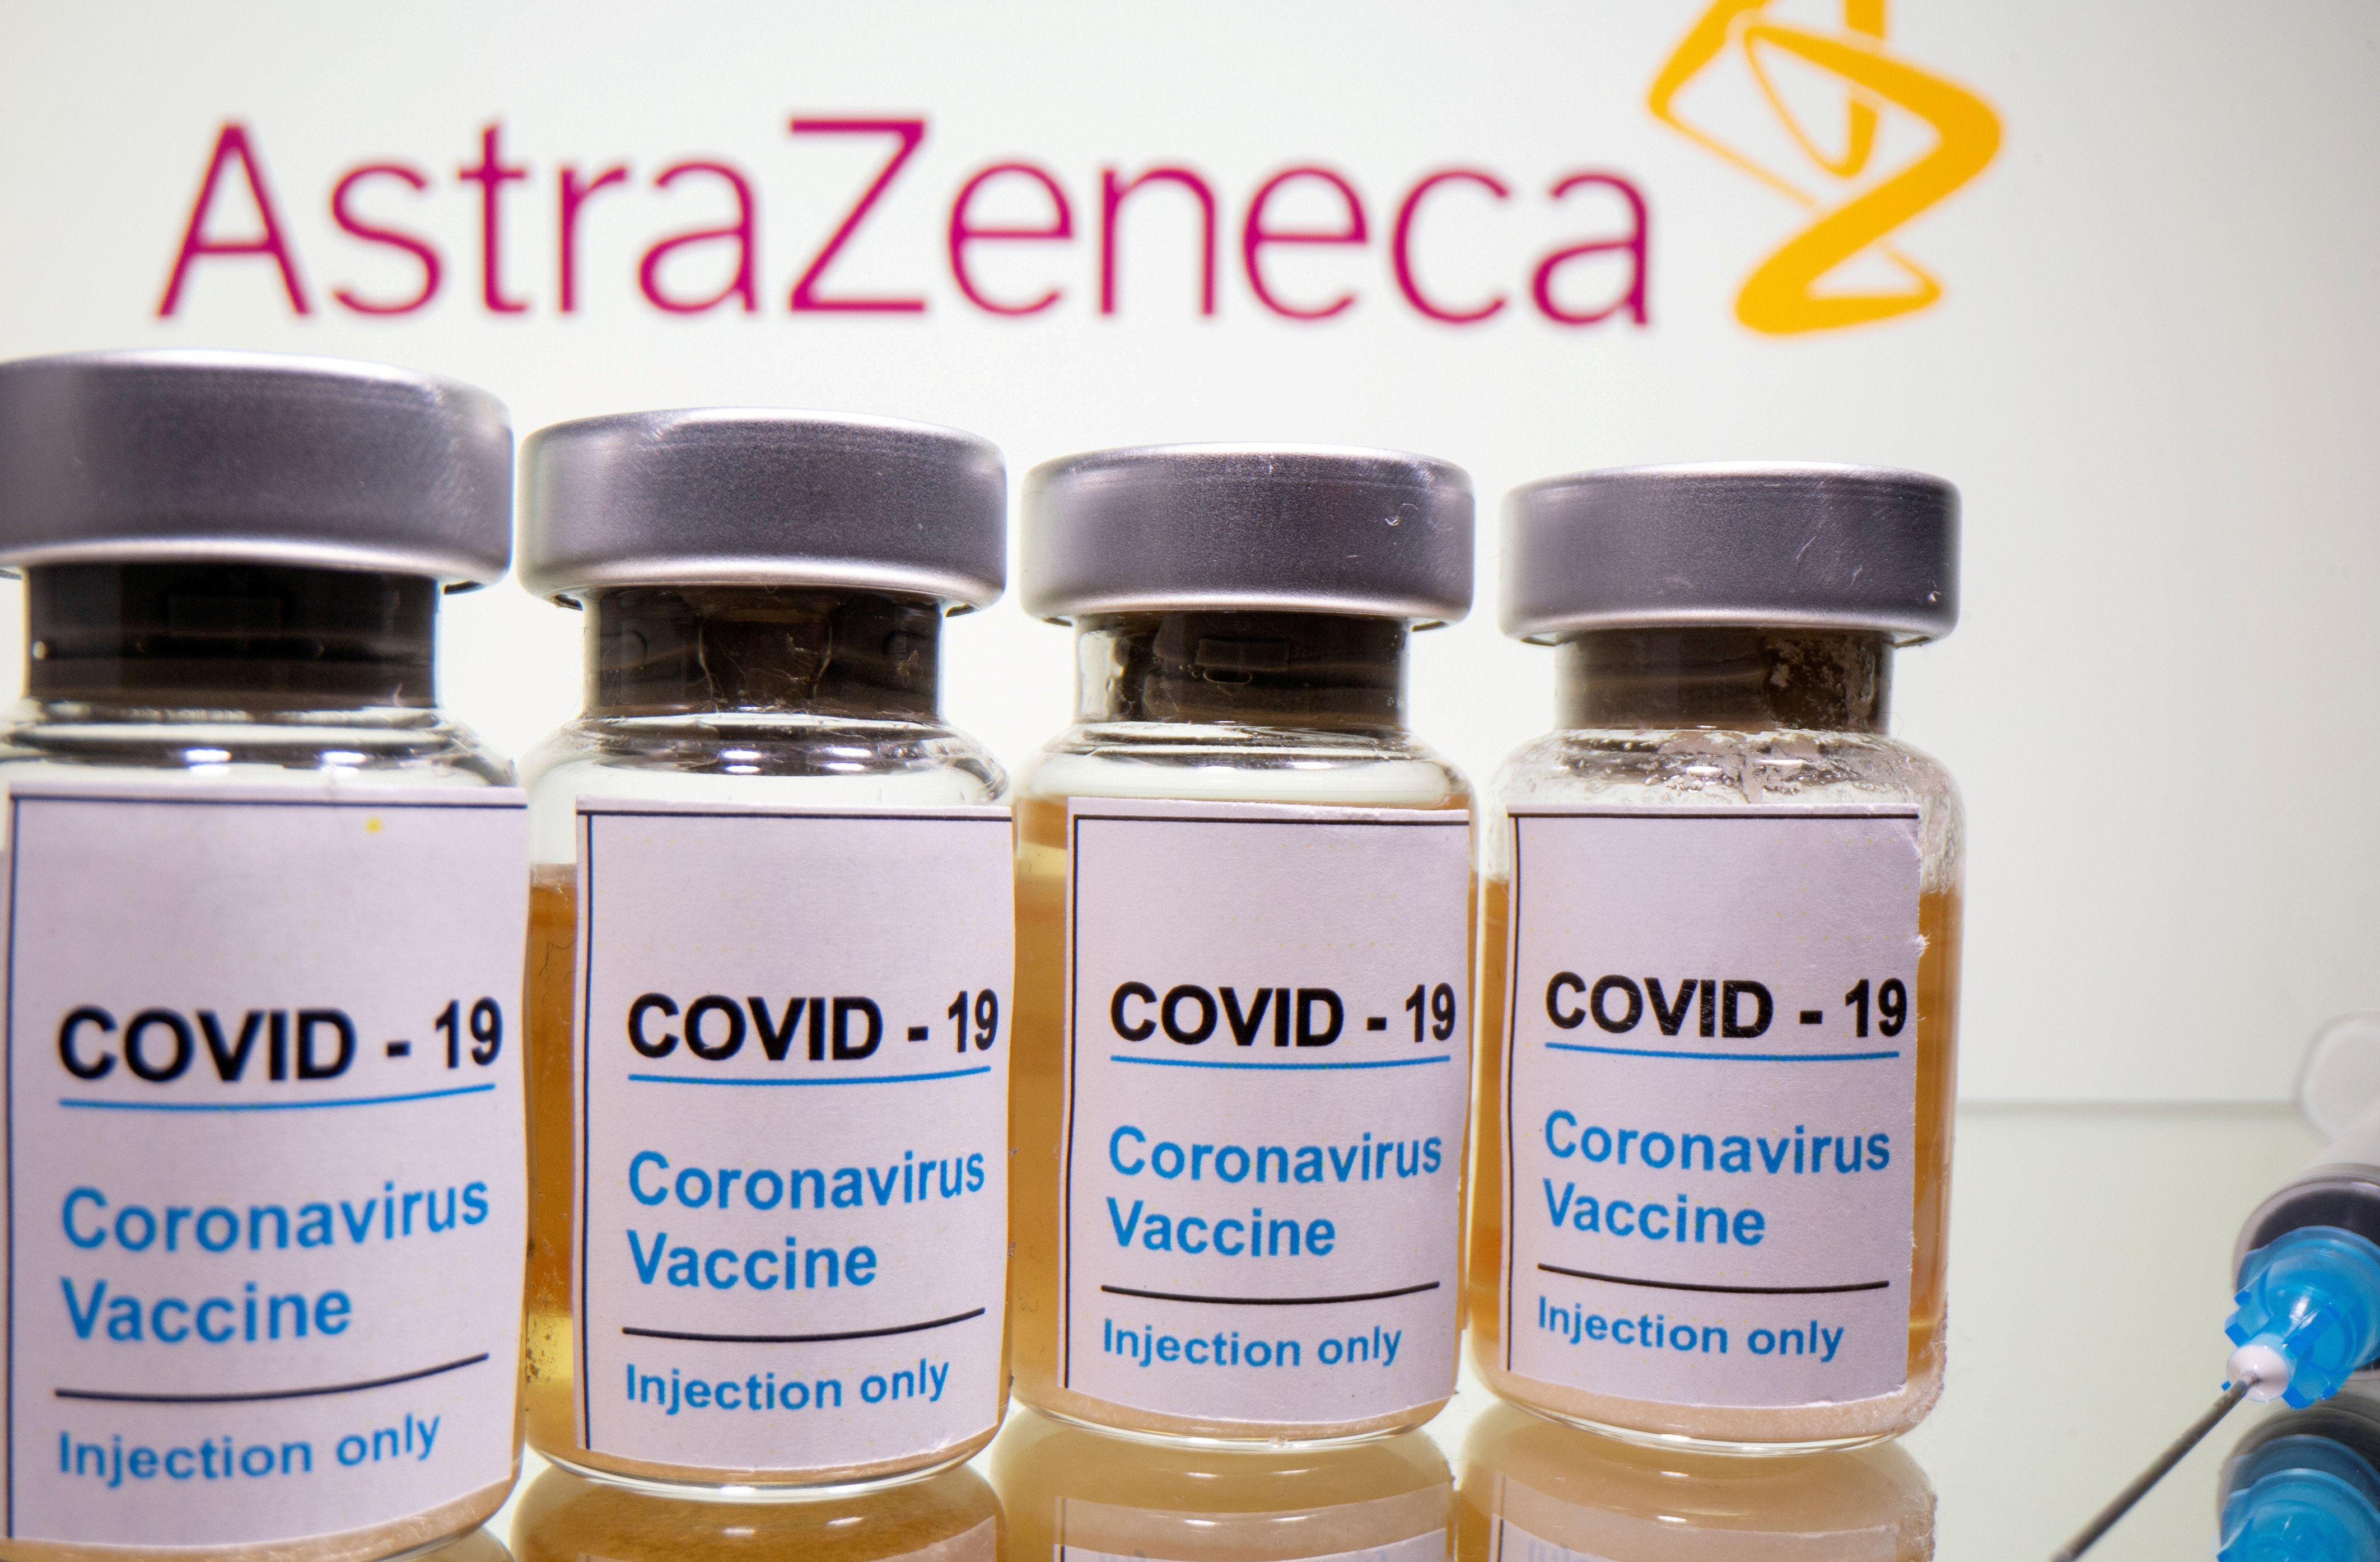 La Comissió Europea autoritza la vacuna d'AstraZeneca contra la Covid